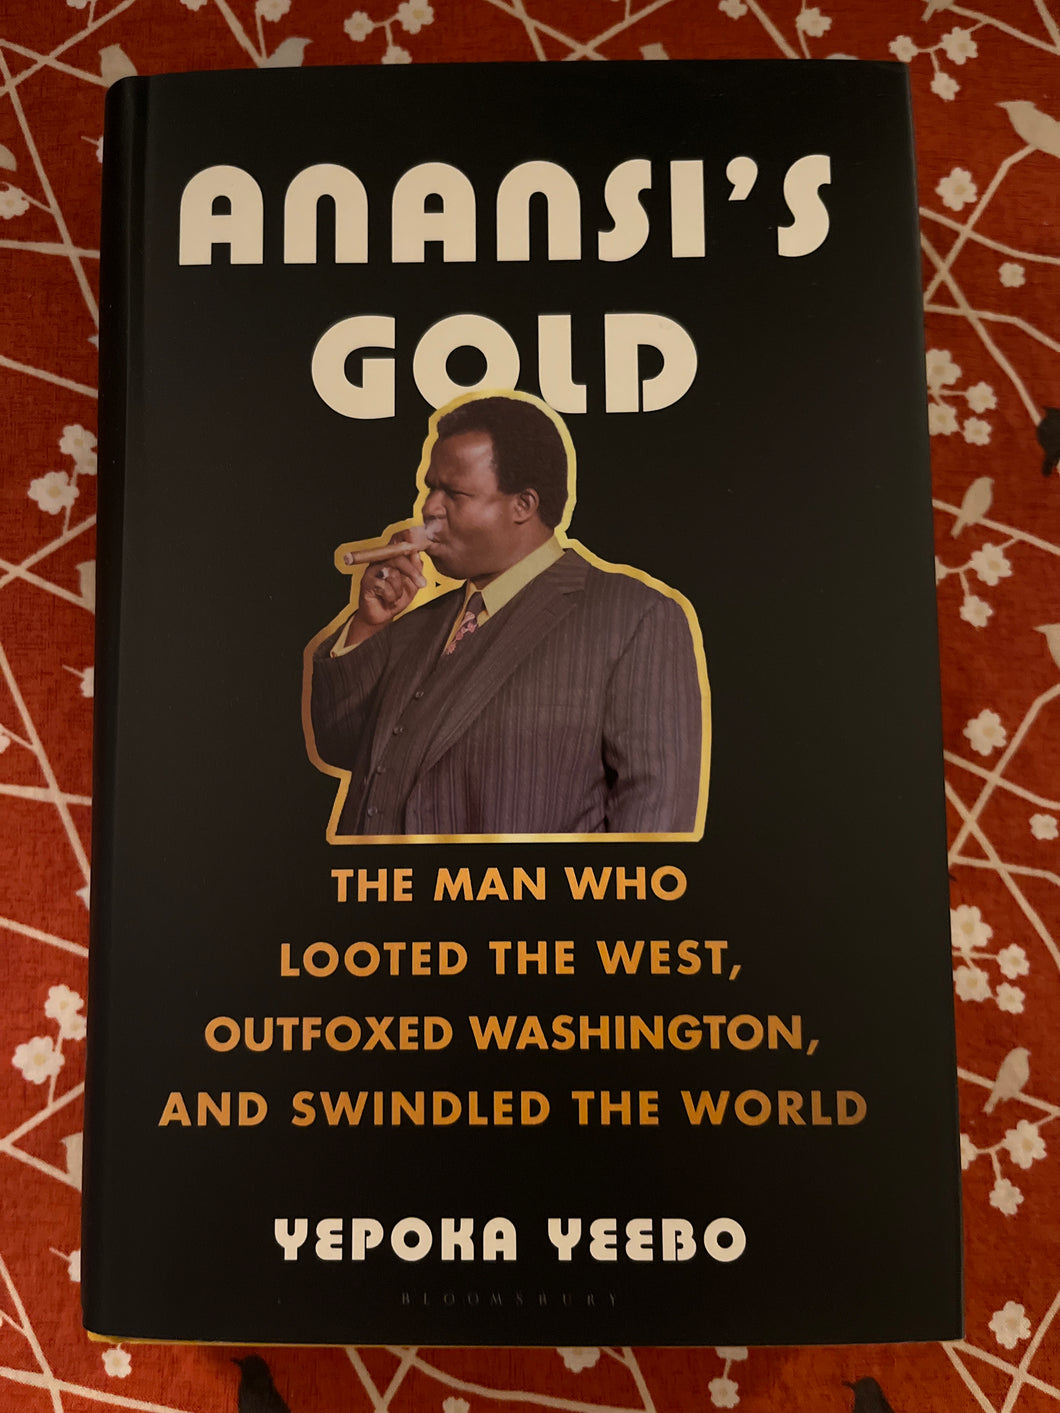 Anansi's Gold